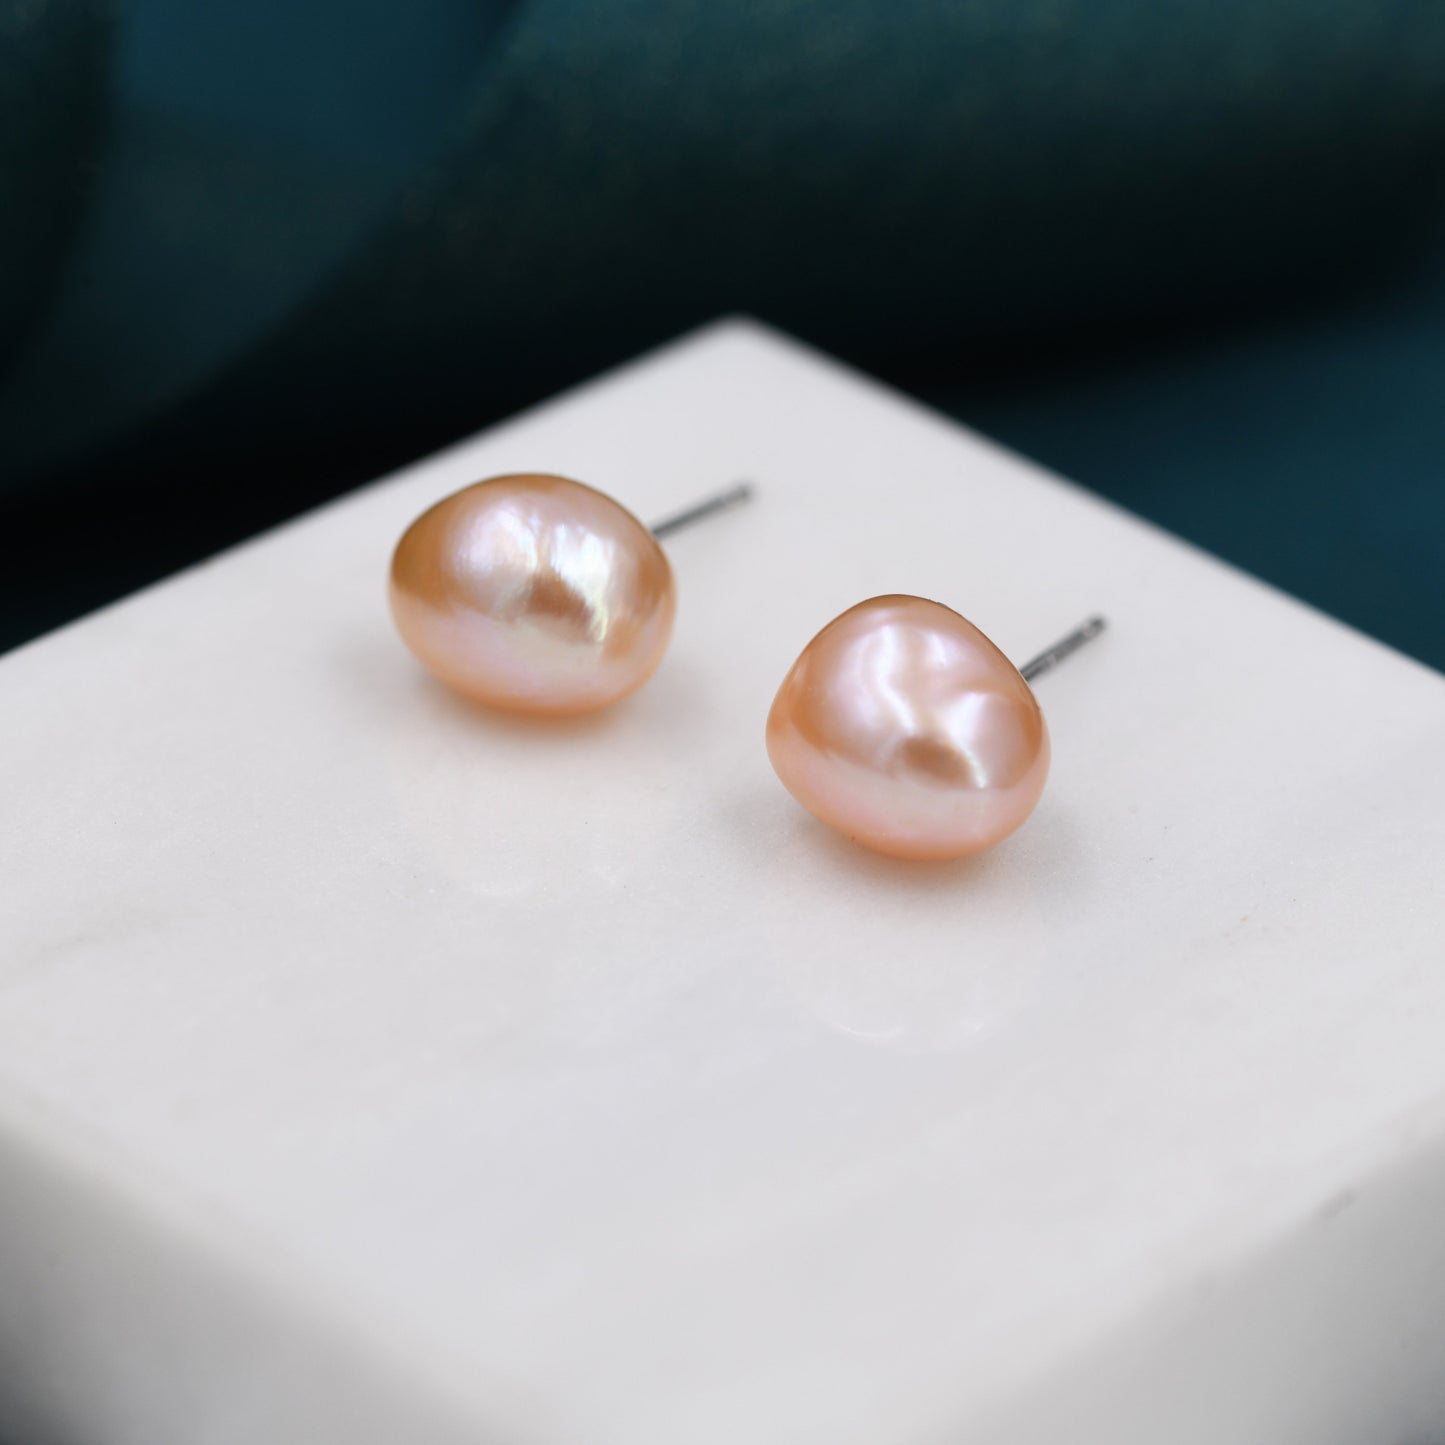 Sterling Silver Genuine Pink Baroque Pearl Stud Earrings,  8mm, Natural Pearl Earrings, Irregular Shape Keshi Pearl Earrings